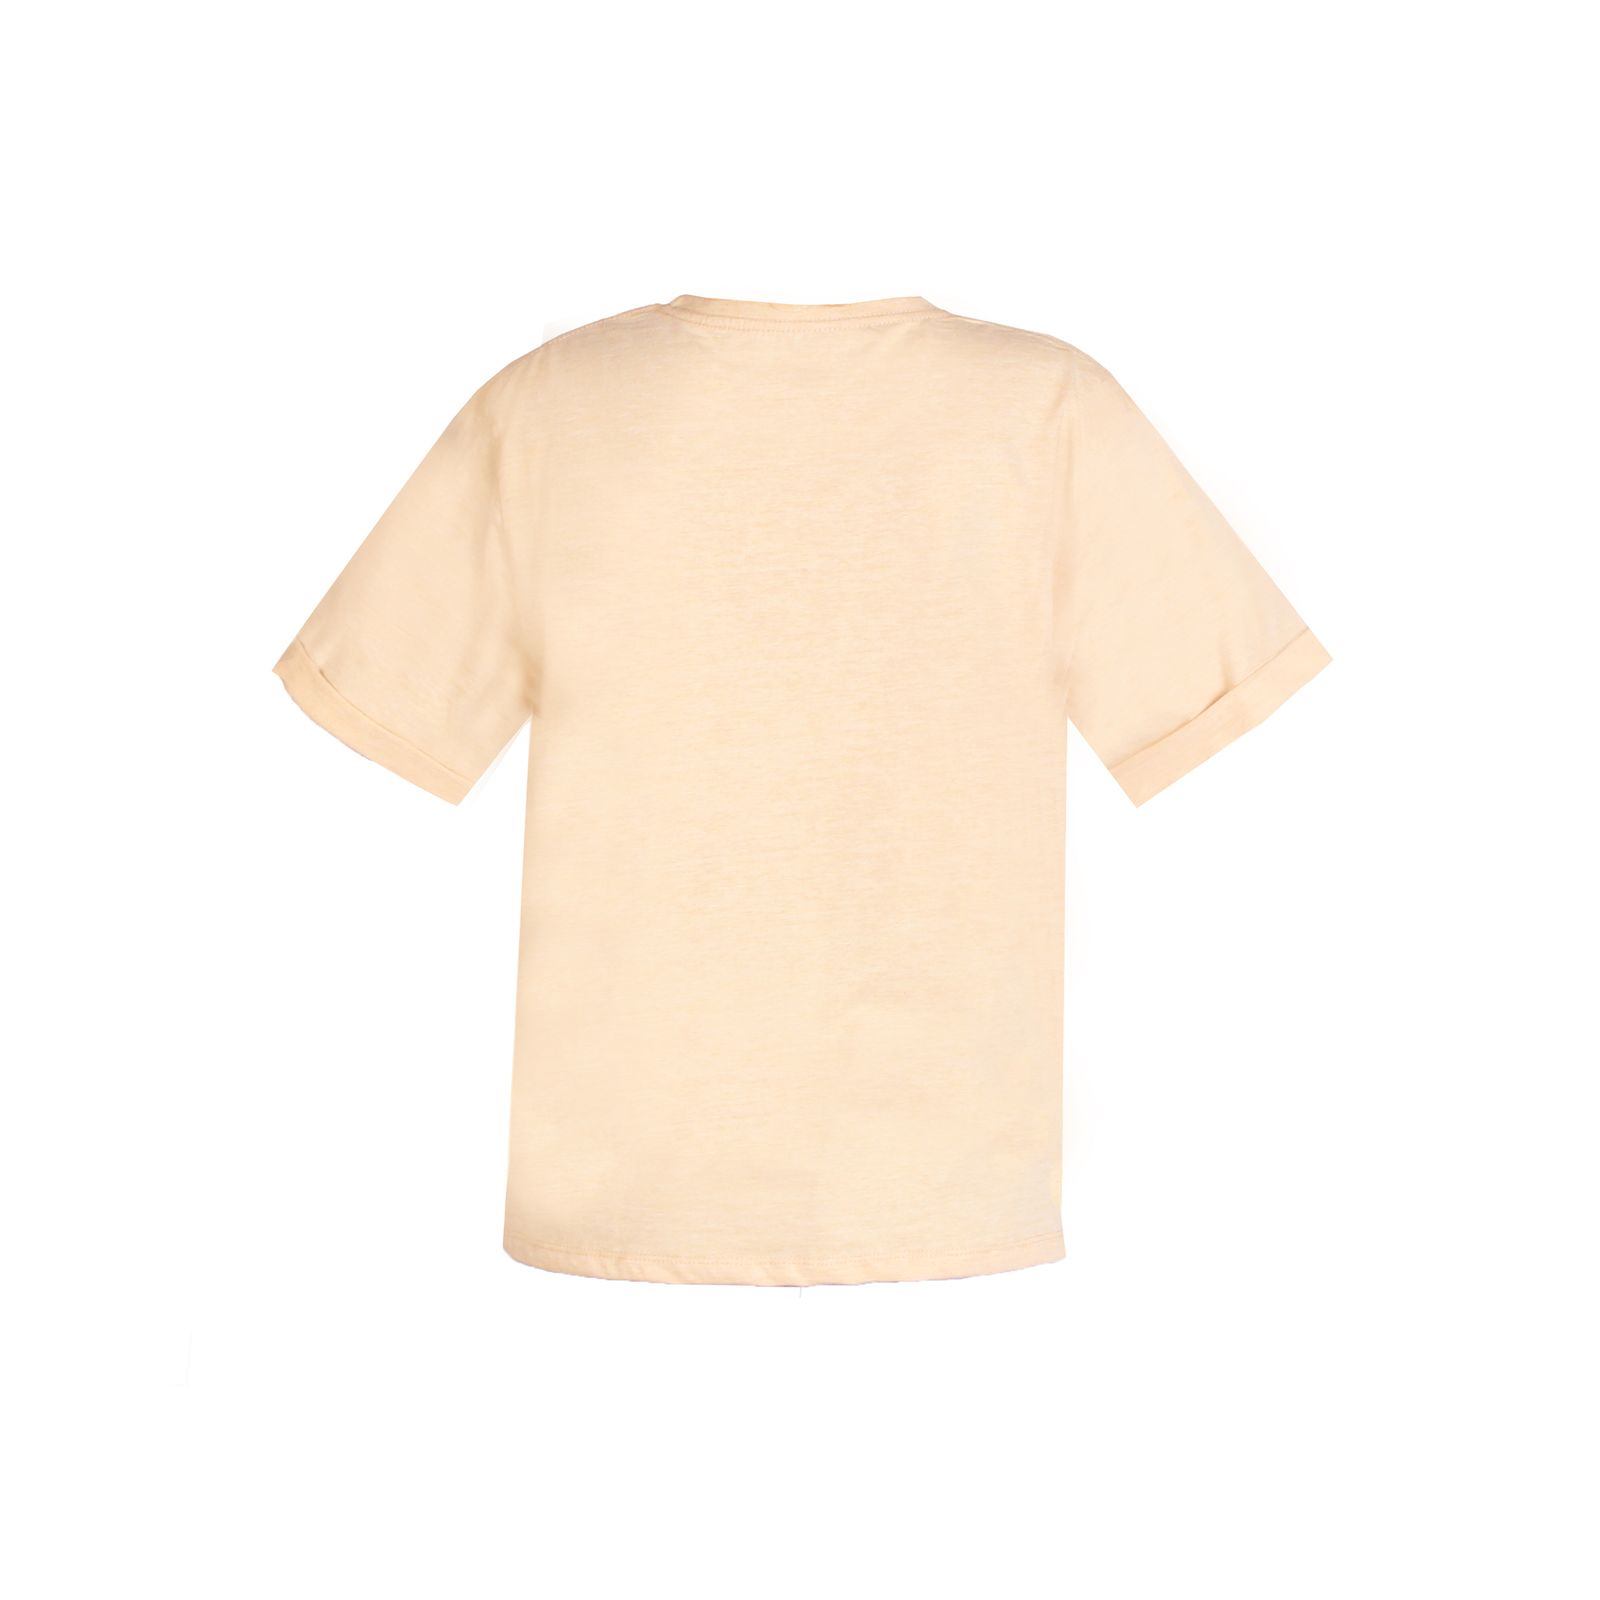 تی شرت آستین کوتاه زنانه ریس مدل میکی موس 106001017 -  - 2